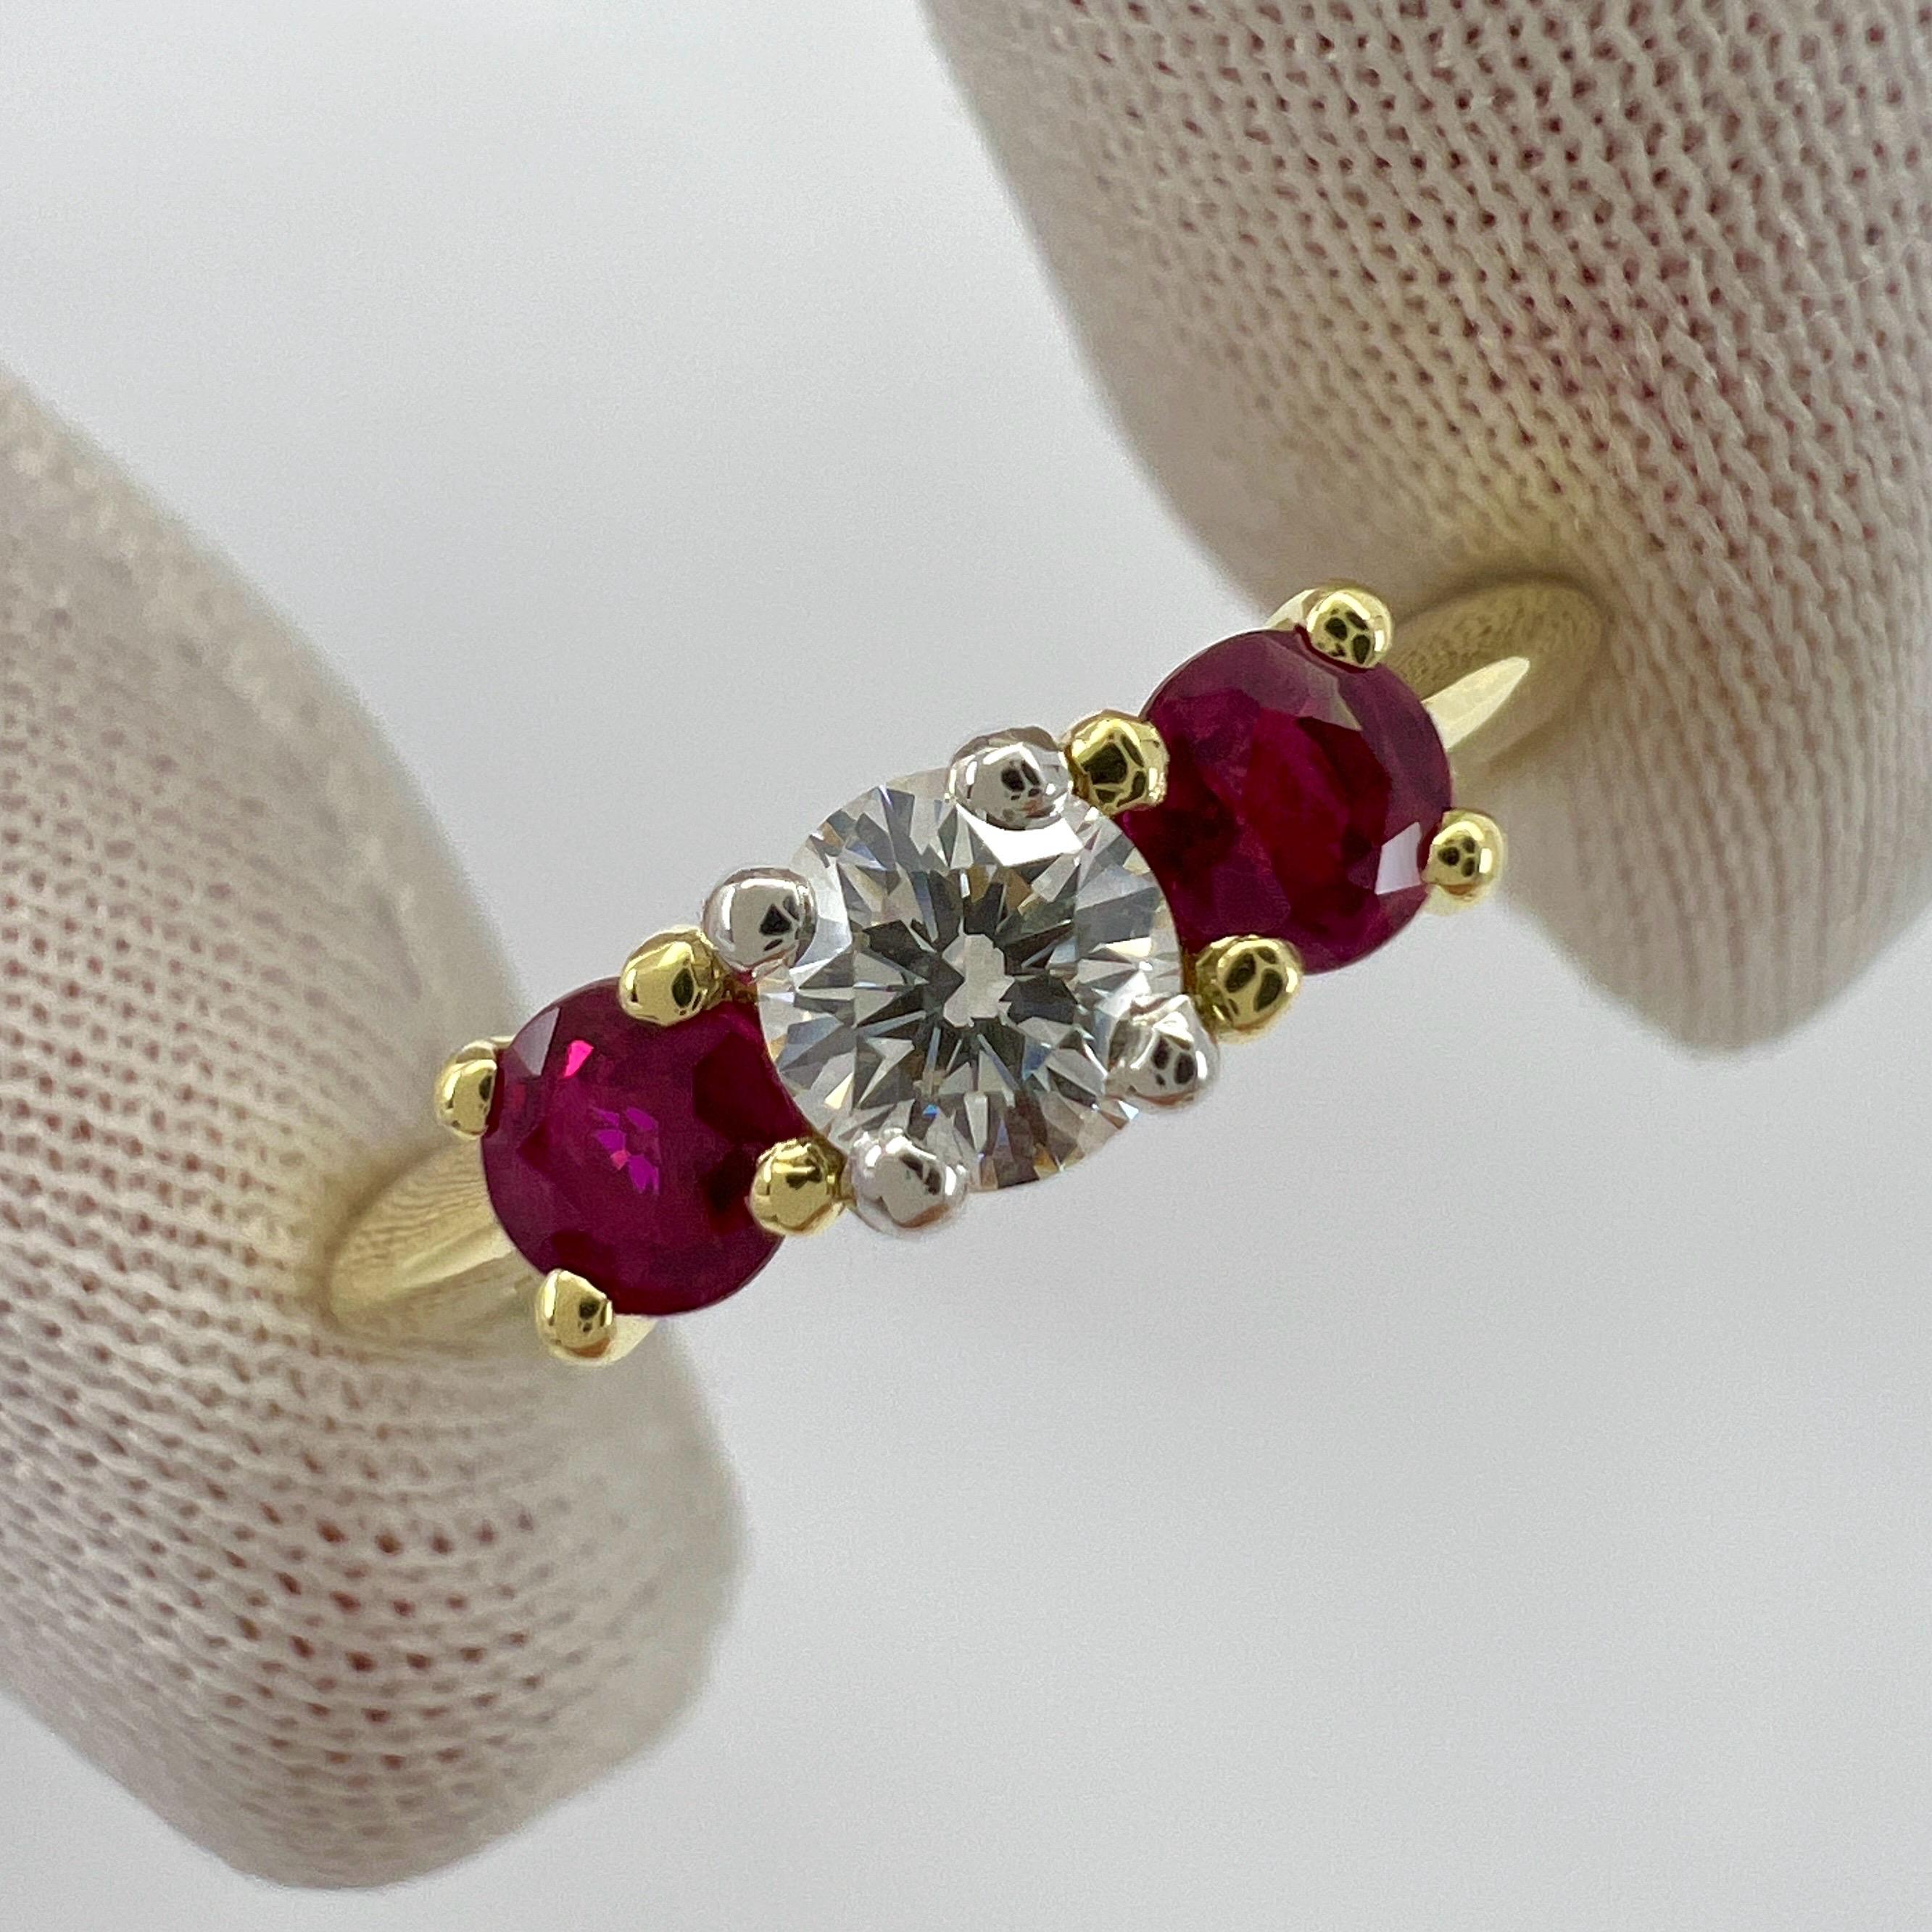 Vintage Tiffany & Co Round Cut Diamond & Ruby 18k Yellow Gold & Platinum Three Stone Ring.

Les maisons de haute joaillerie comme Tiffany n'utilisent que les diamants et les pierres précieuses les plus fins pour leurs bijoux et cette pièce ne fait